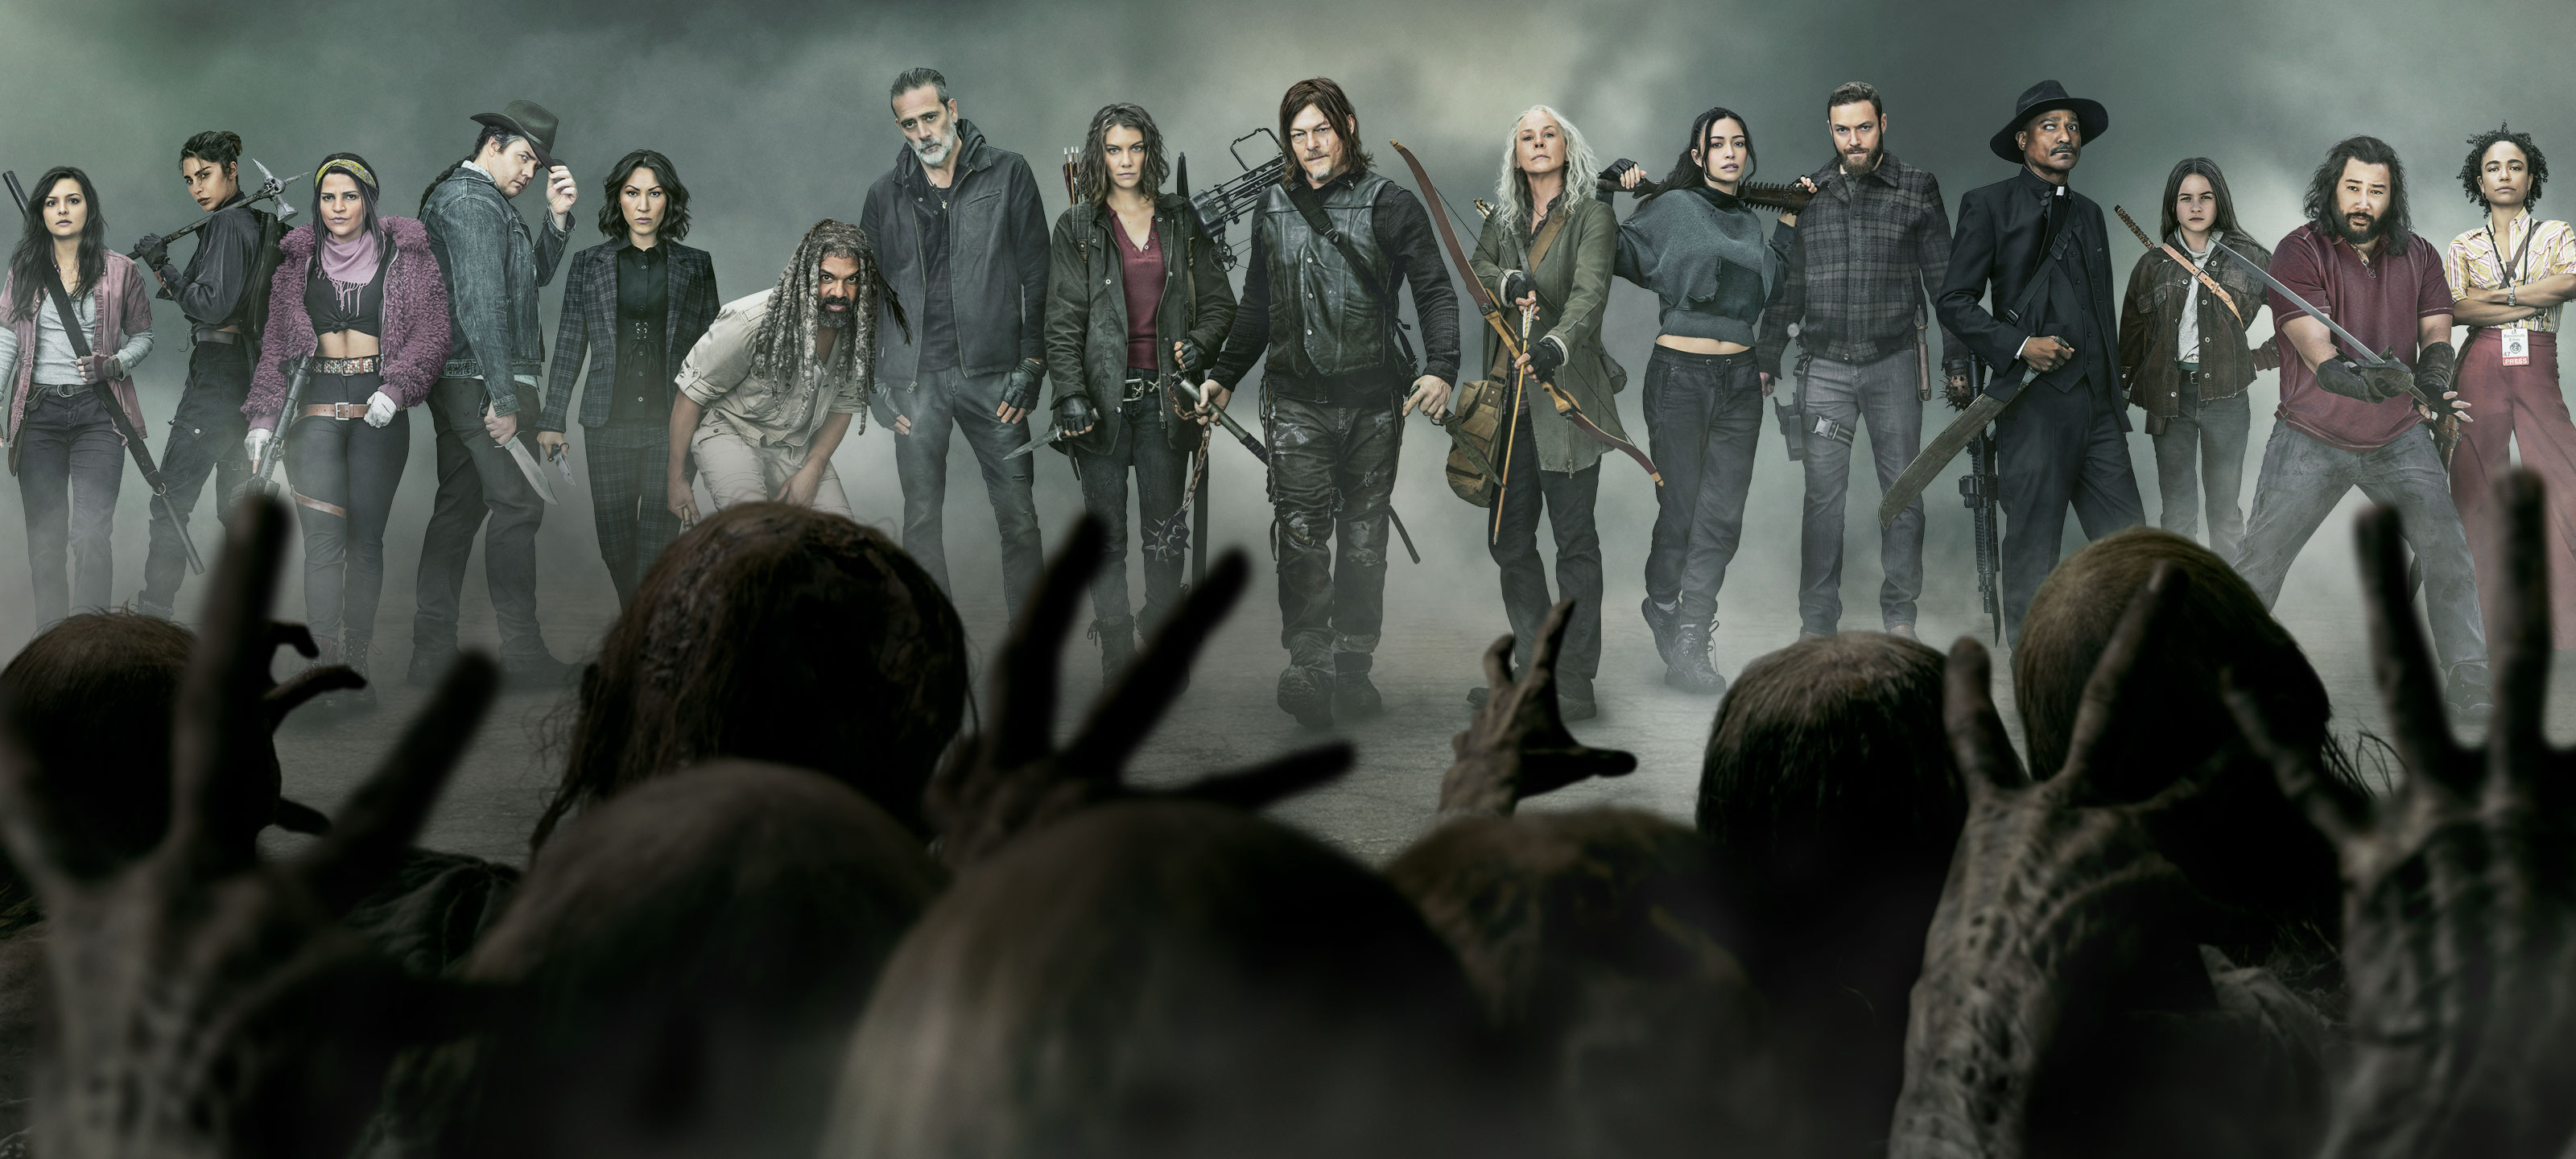 Narabar Oh jee Riskant Watch The Walking Dead Season Online | AMC